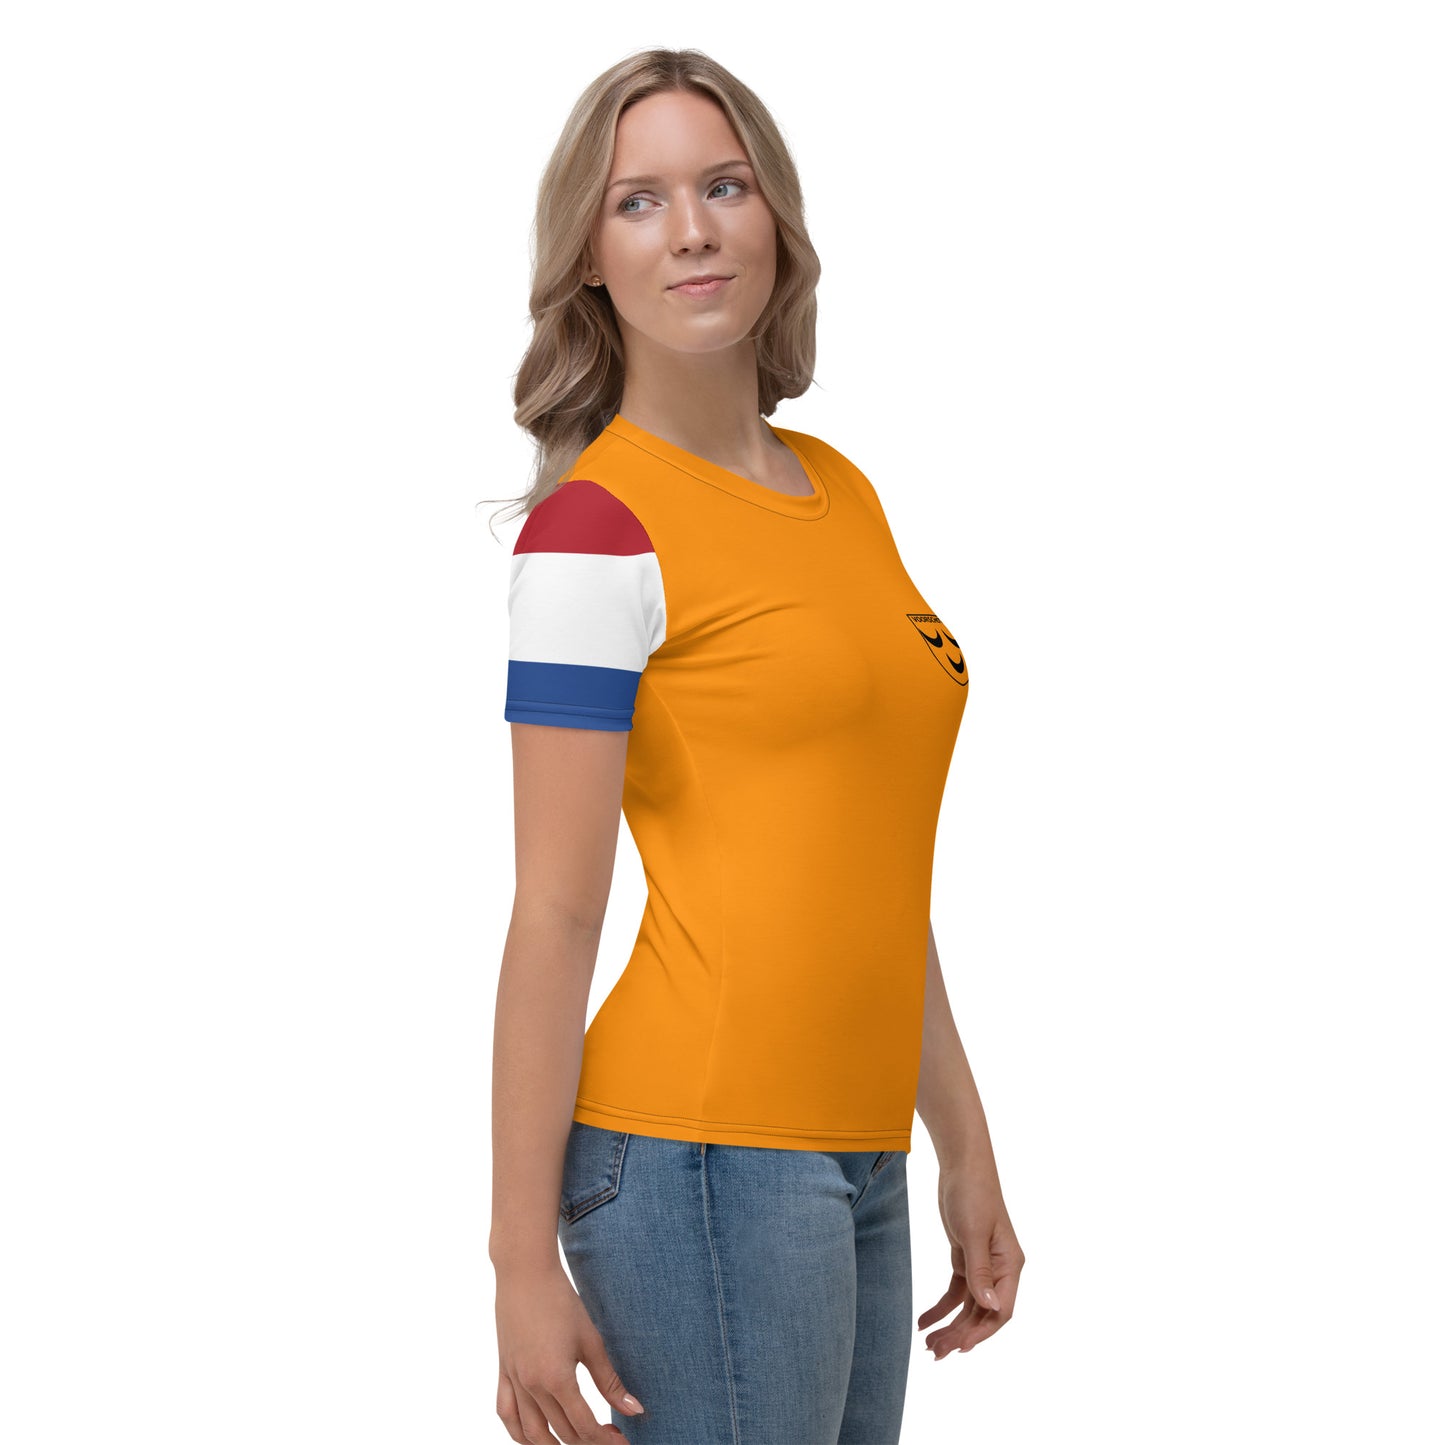 Voorschoten Oranje Dames T-shirt